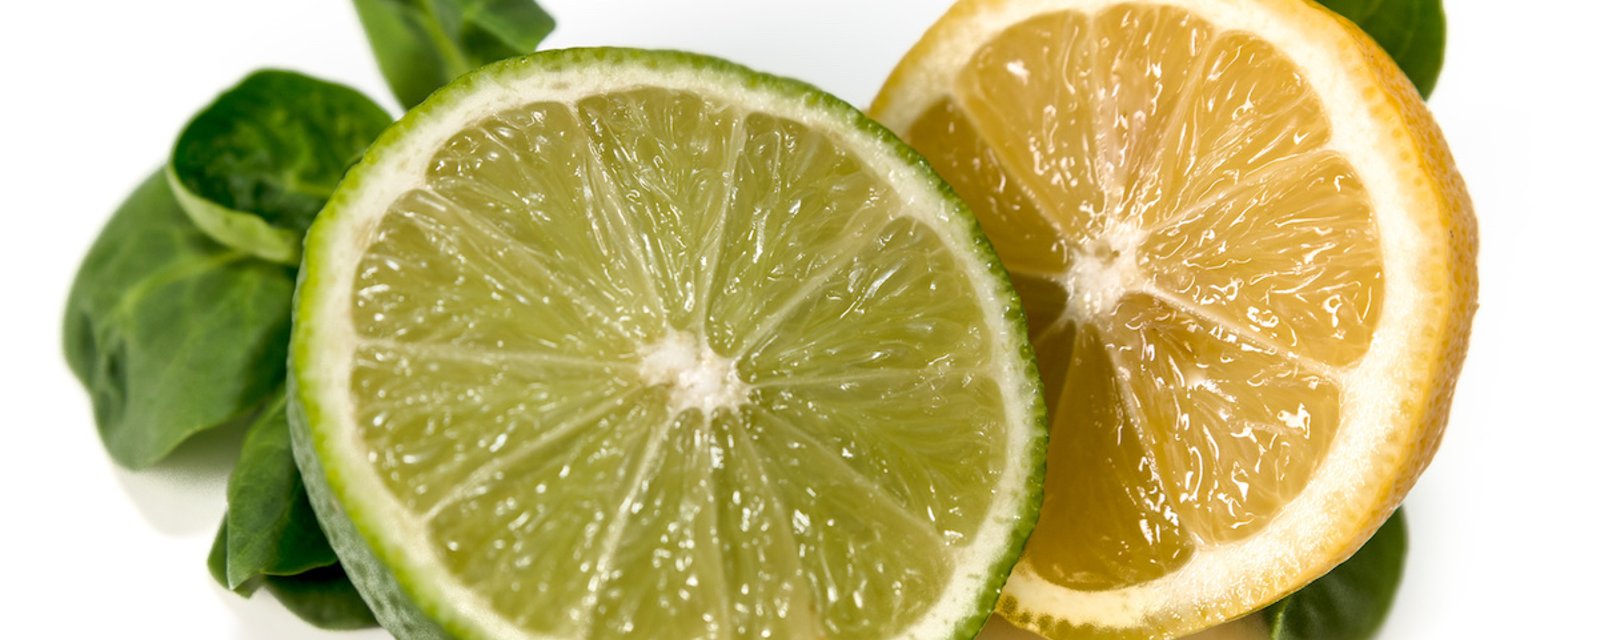 Quelle est la différence entre le citron et la lime?